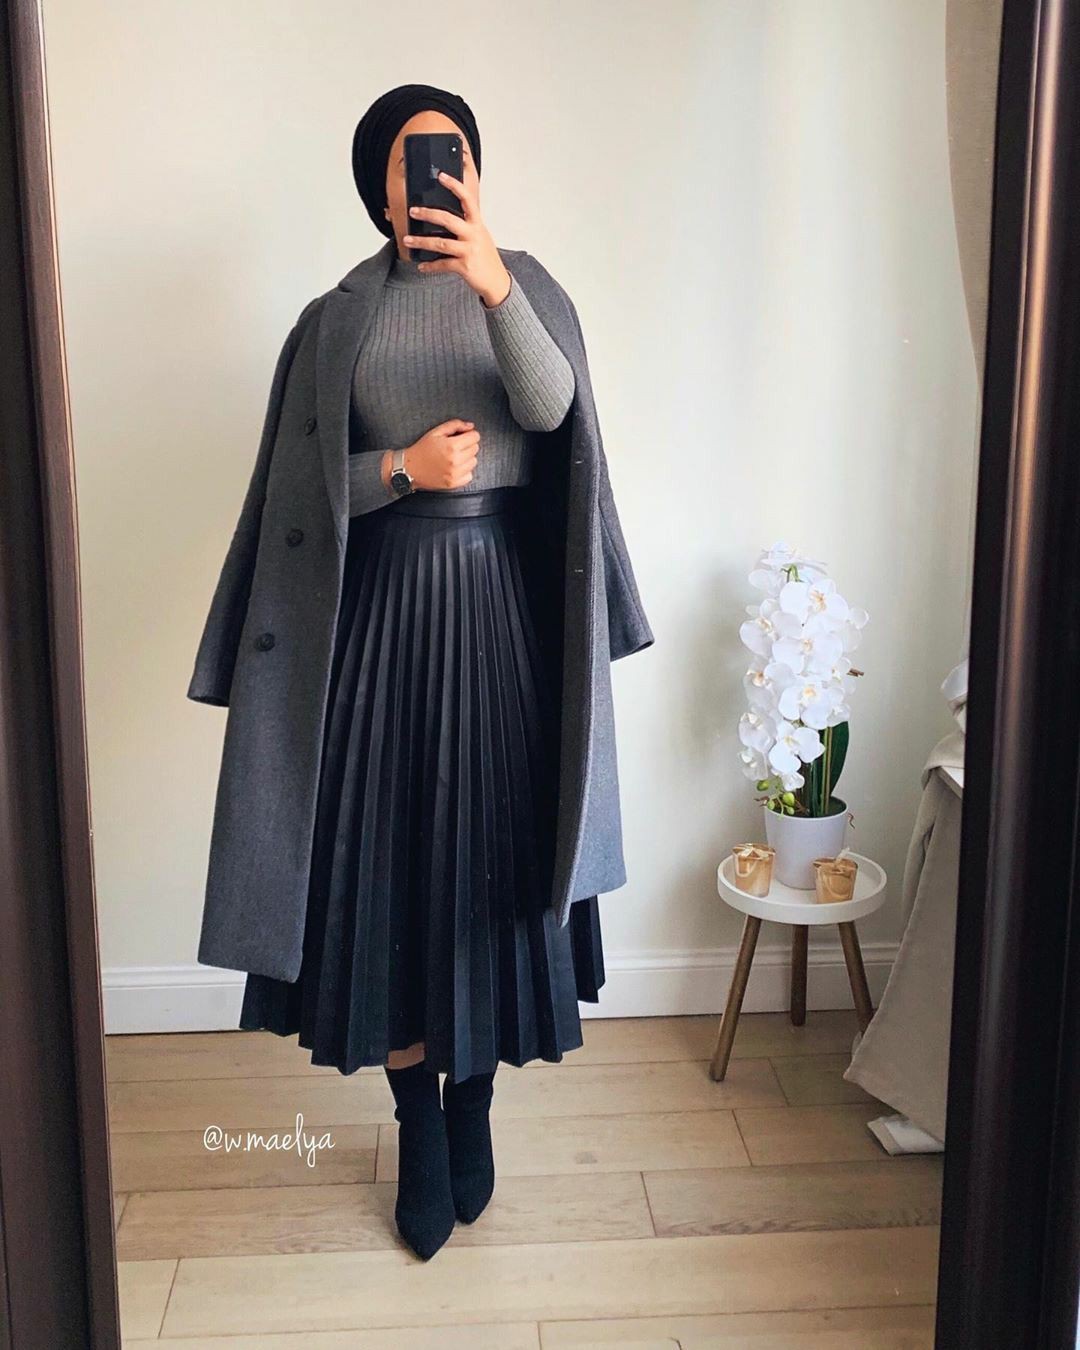 Combinación de color negro con ropa formal, falda, abrigo.: moda islámica,  Semana de la Moda,  Traje negro,  Hiyab  